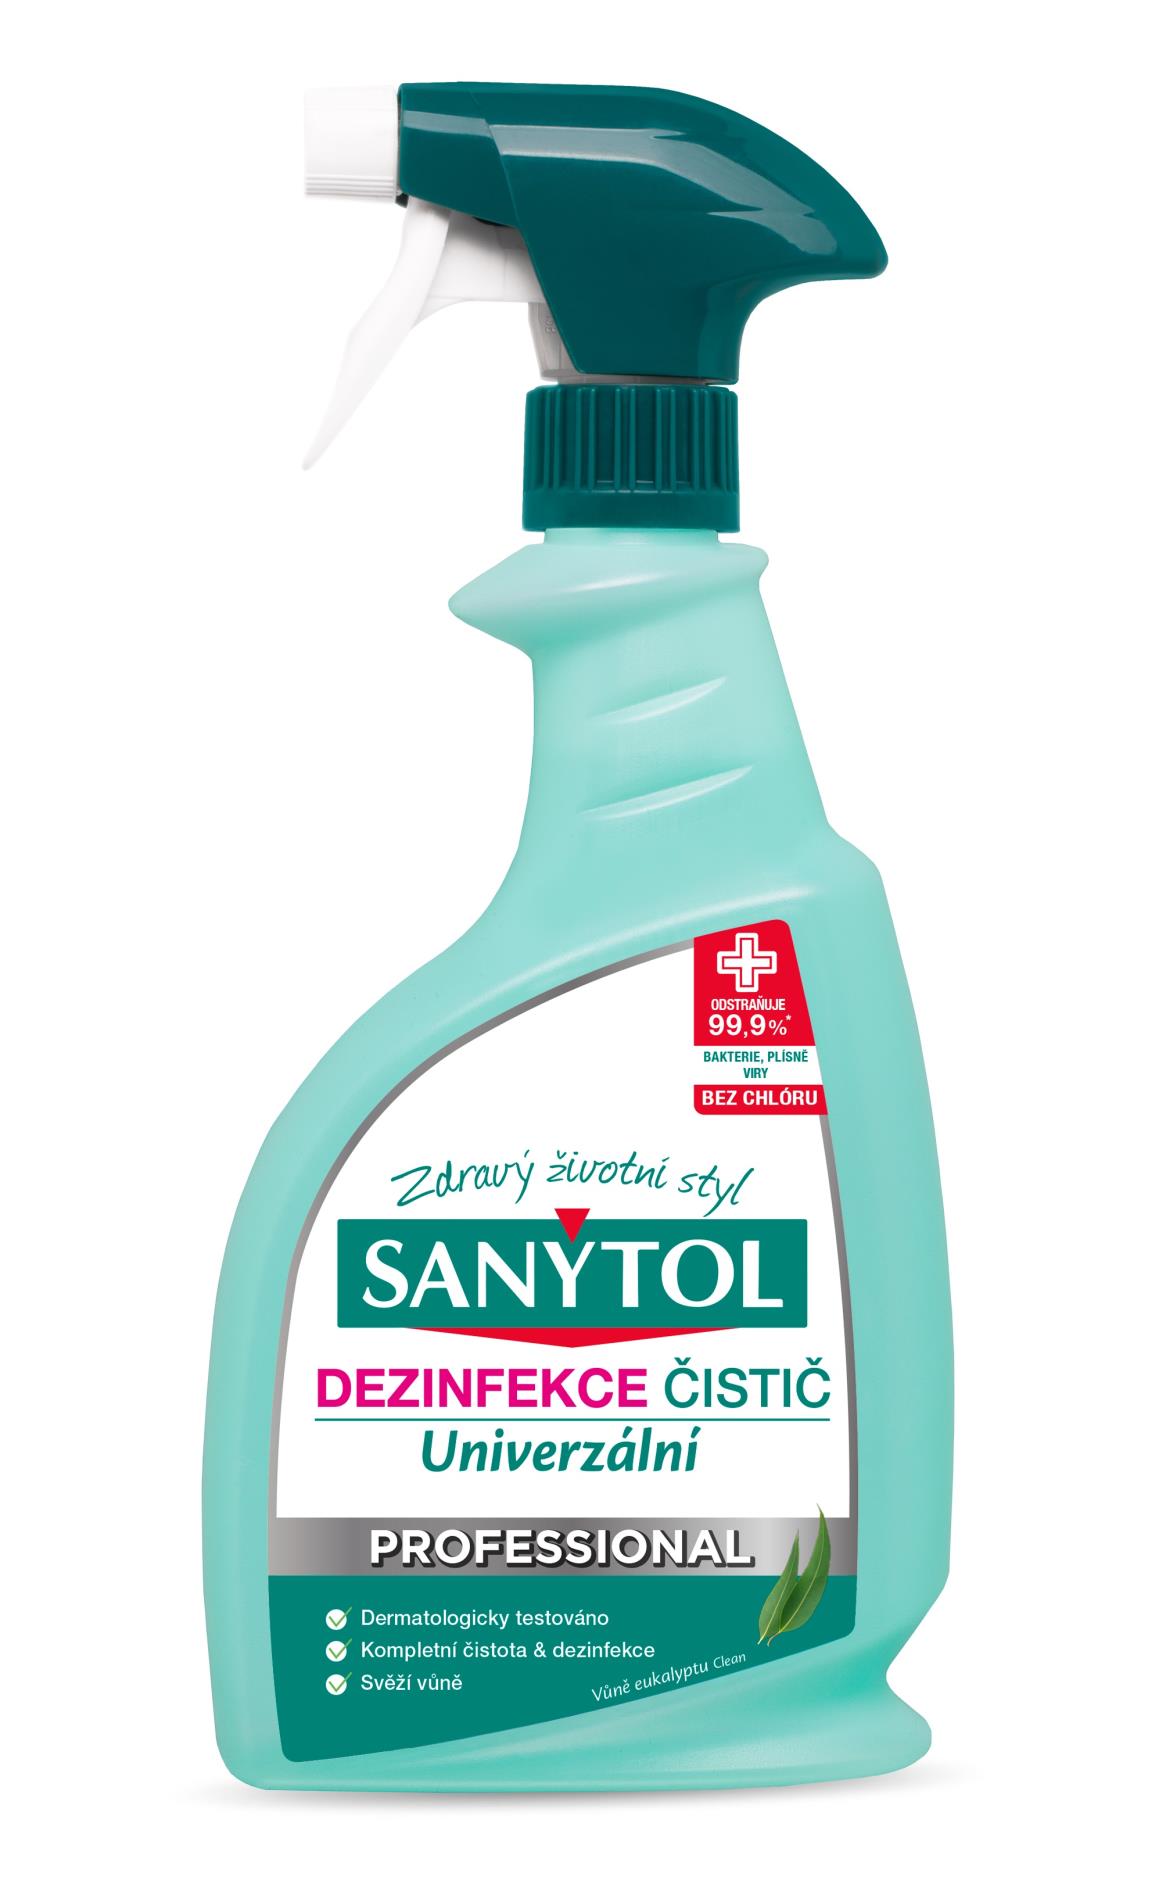 Sanytol Dezinfekční prostředek Sanytol Professional - univerzální, 750 ml